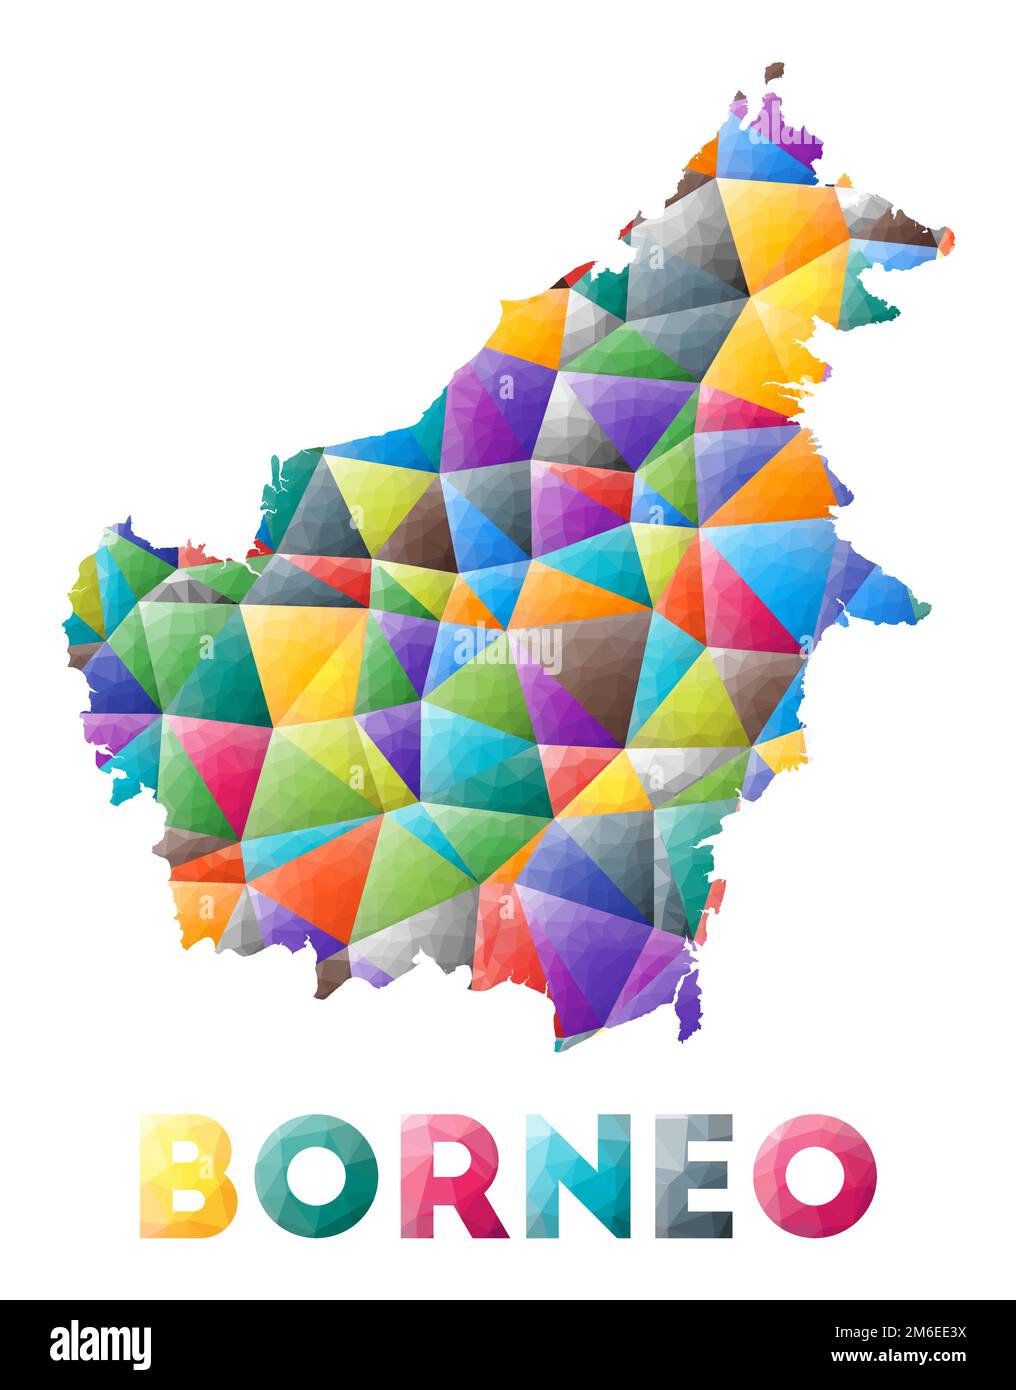 Borneo - colorata e bassa forma di isola polica. Triangoli geometrici multicolore. Design moderno e alla moda. Illustrazione vettoriale. Illustrazione Vettoriale